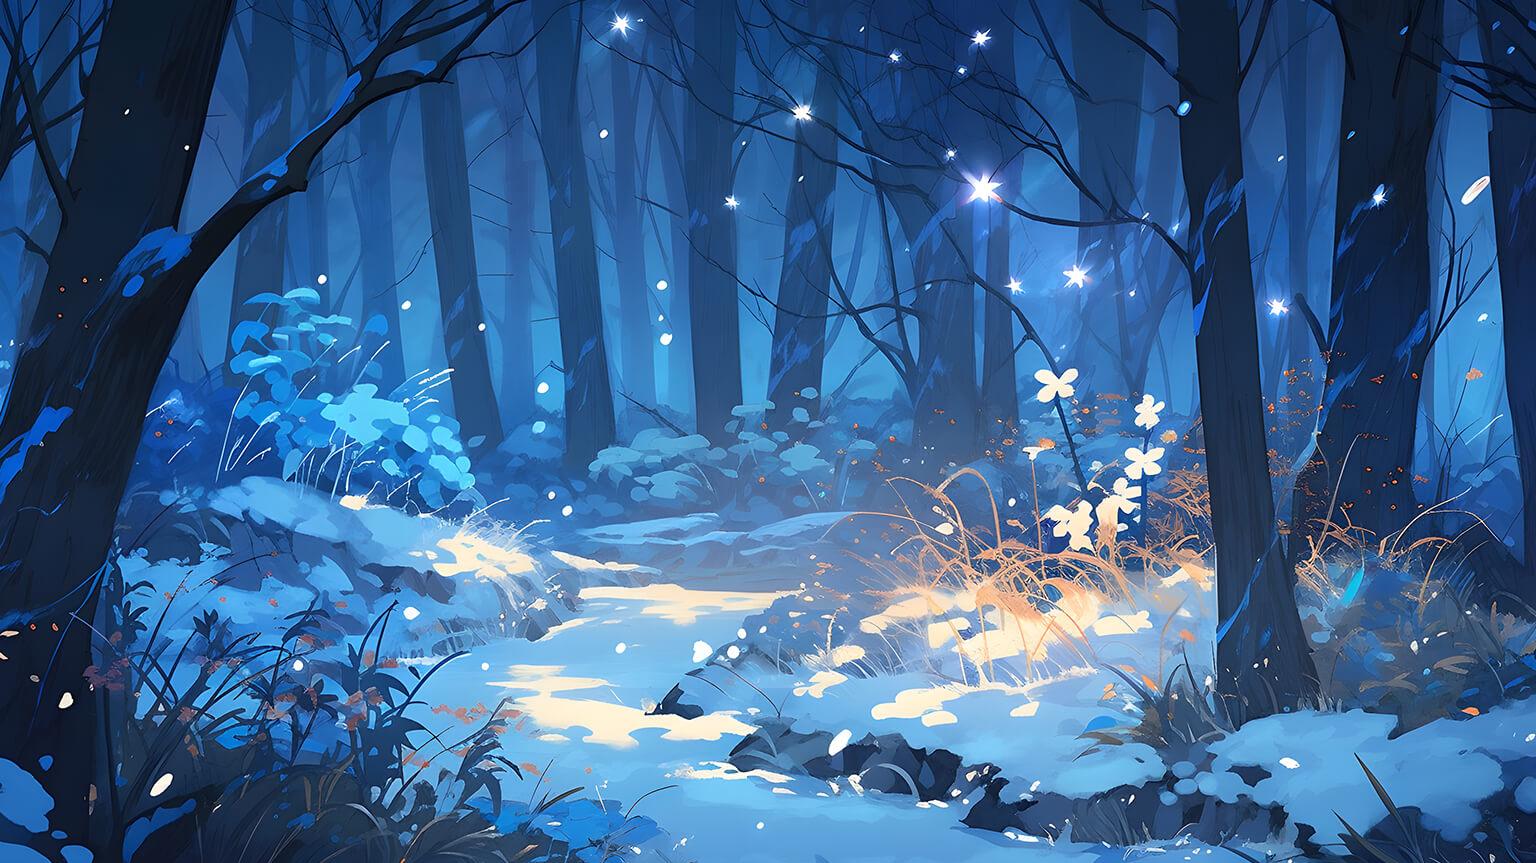 Magic Winter Forest Blue Desktop Wallpaper 4k